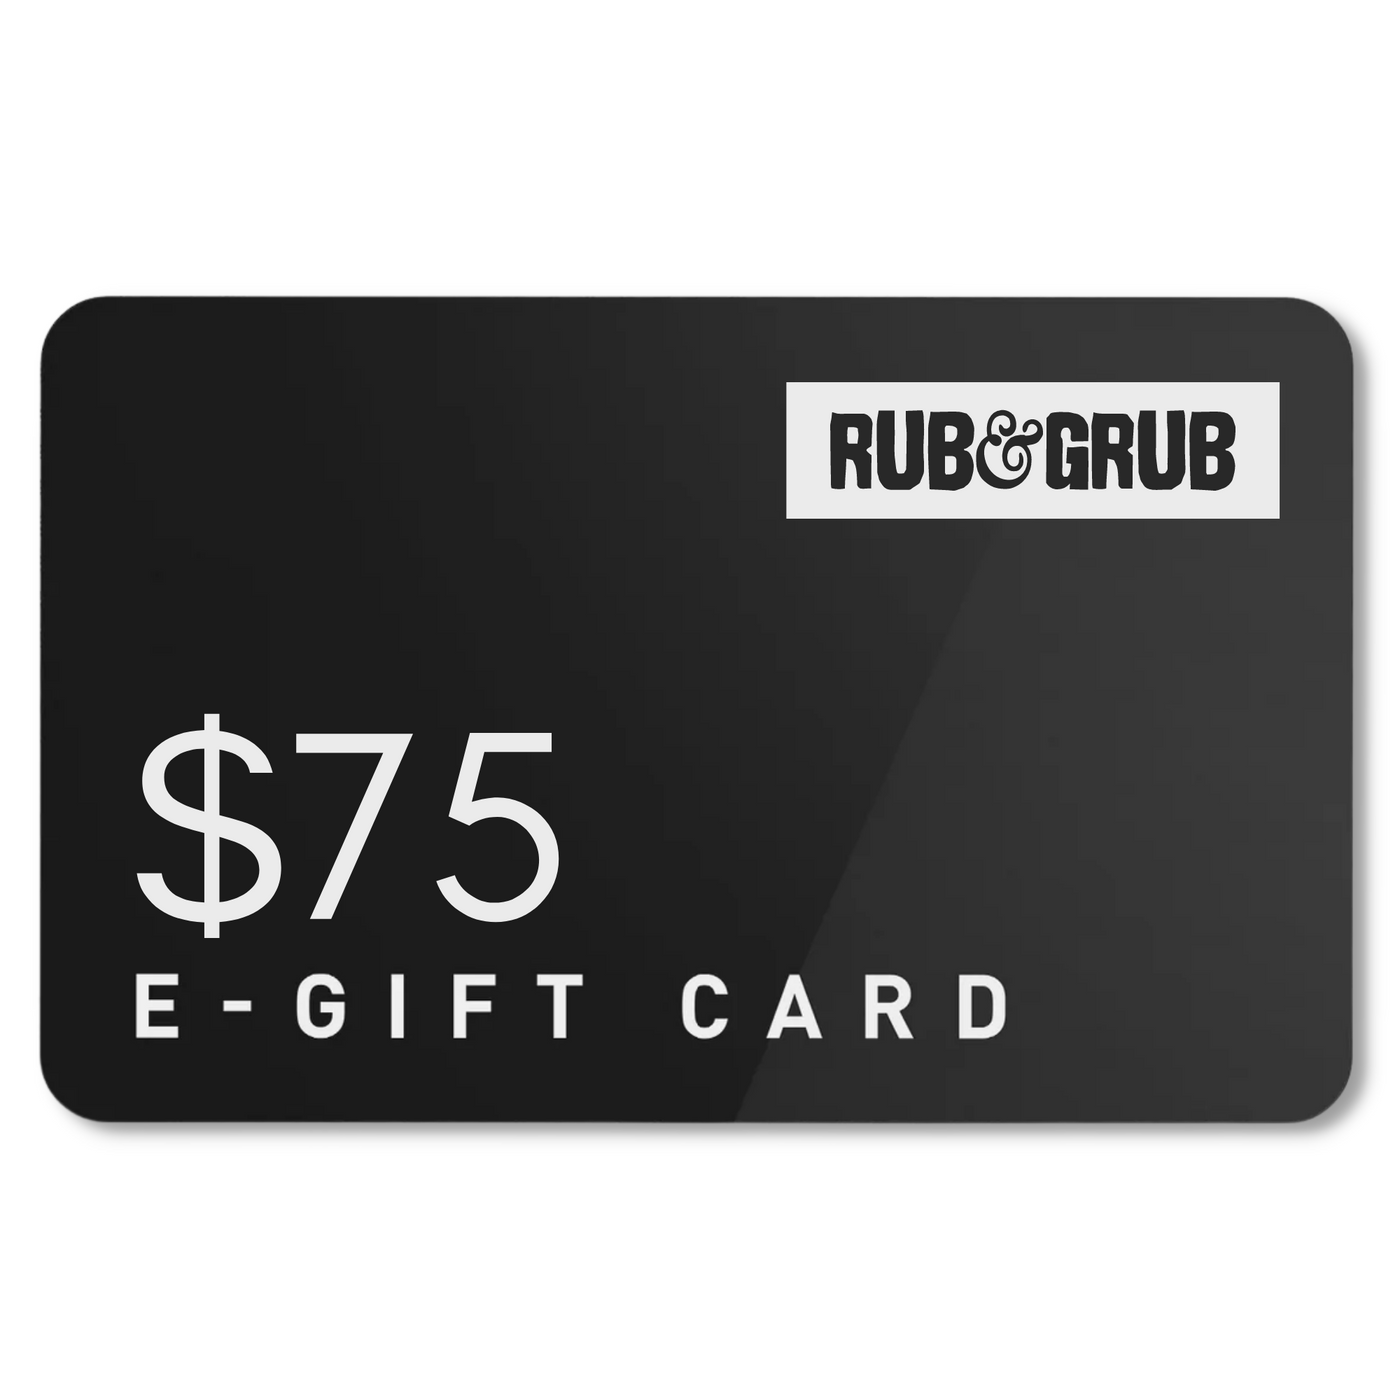 Rub & Grub $75 Gift Card